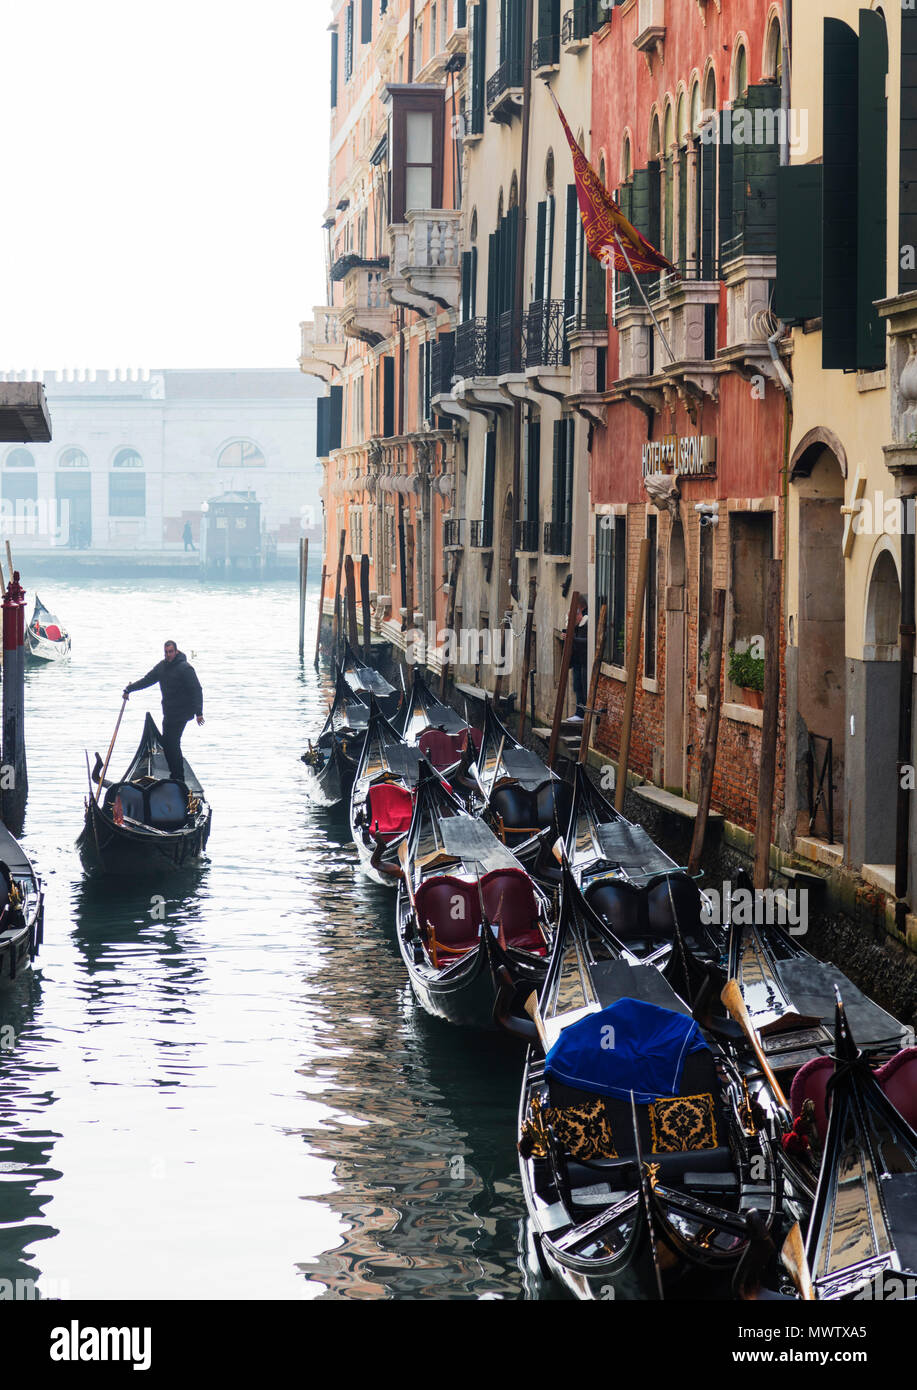 Gondola sur un canal, Venice, UNESCO World Heritage Site, Vénétie, Italie, Europe Banque D'Images